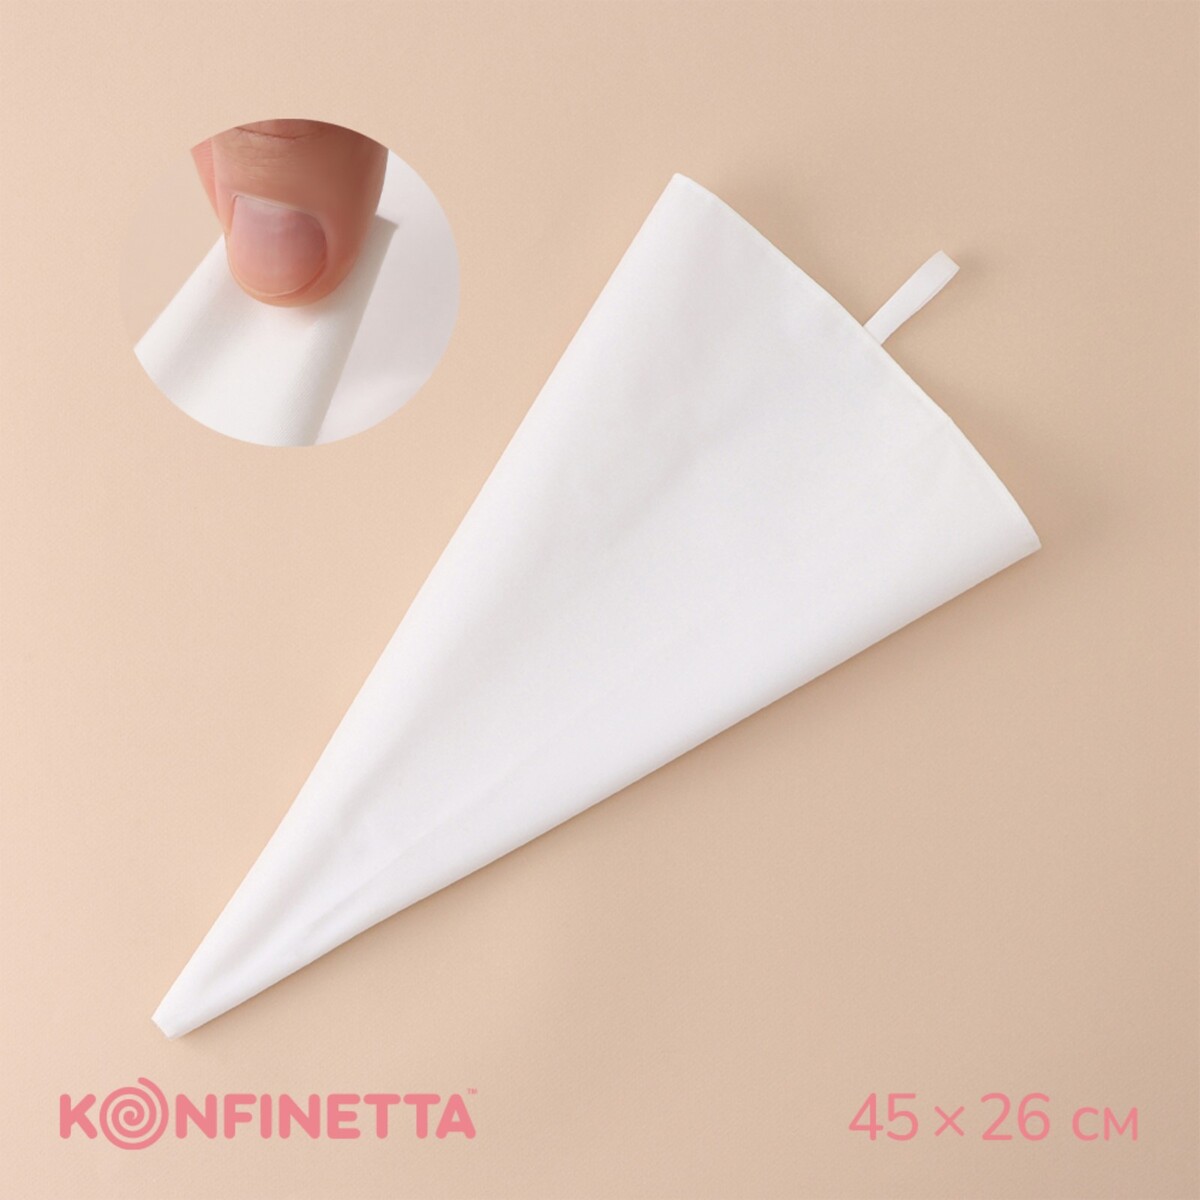 Кондитерский мешок konfinetta, 45×26 см, хлопок кондитерский мешок konfinetta 45×26 см хлопок